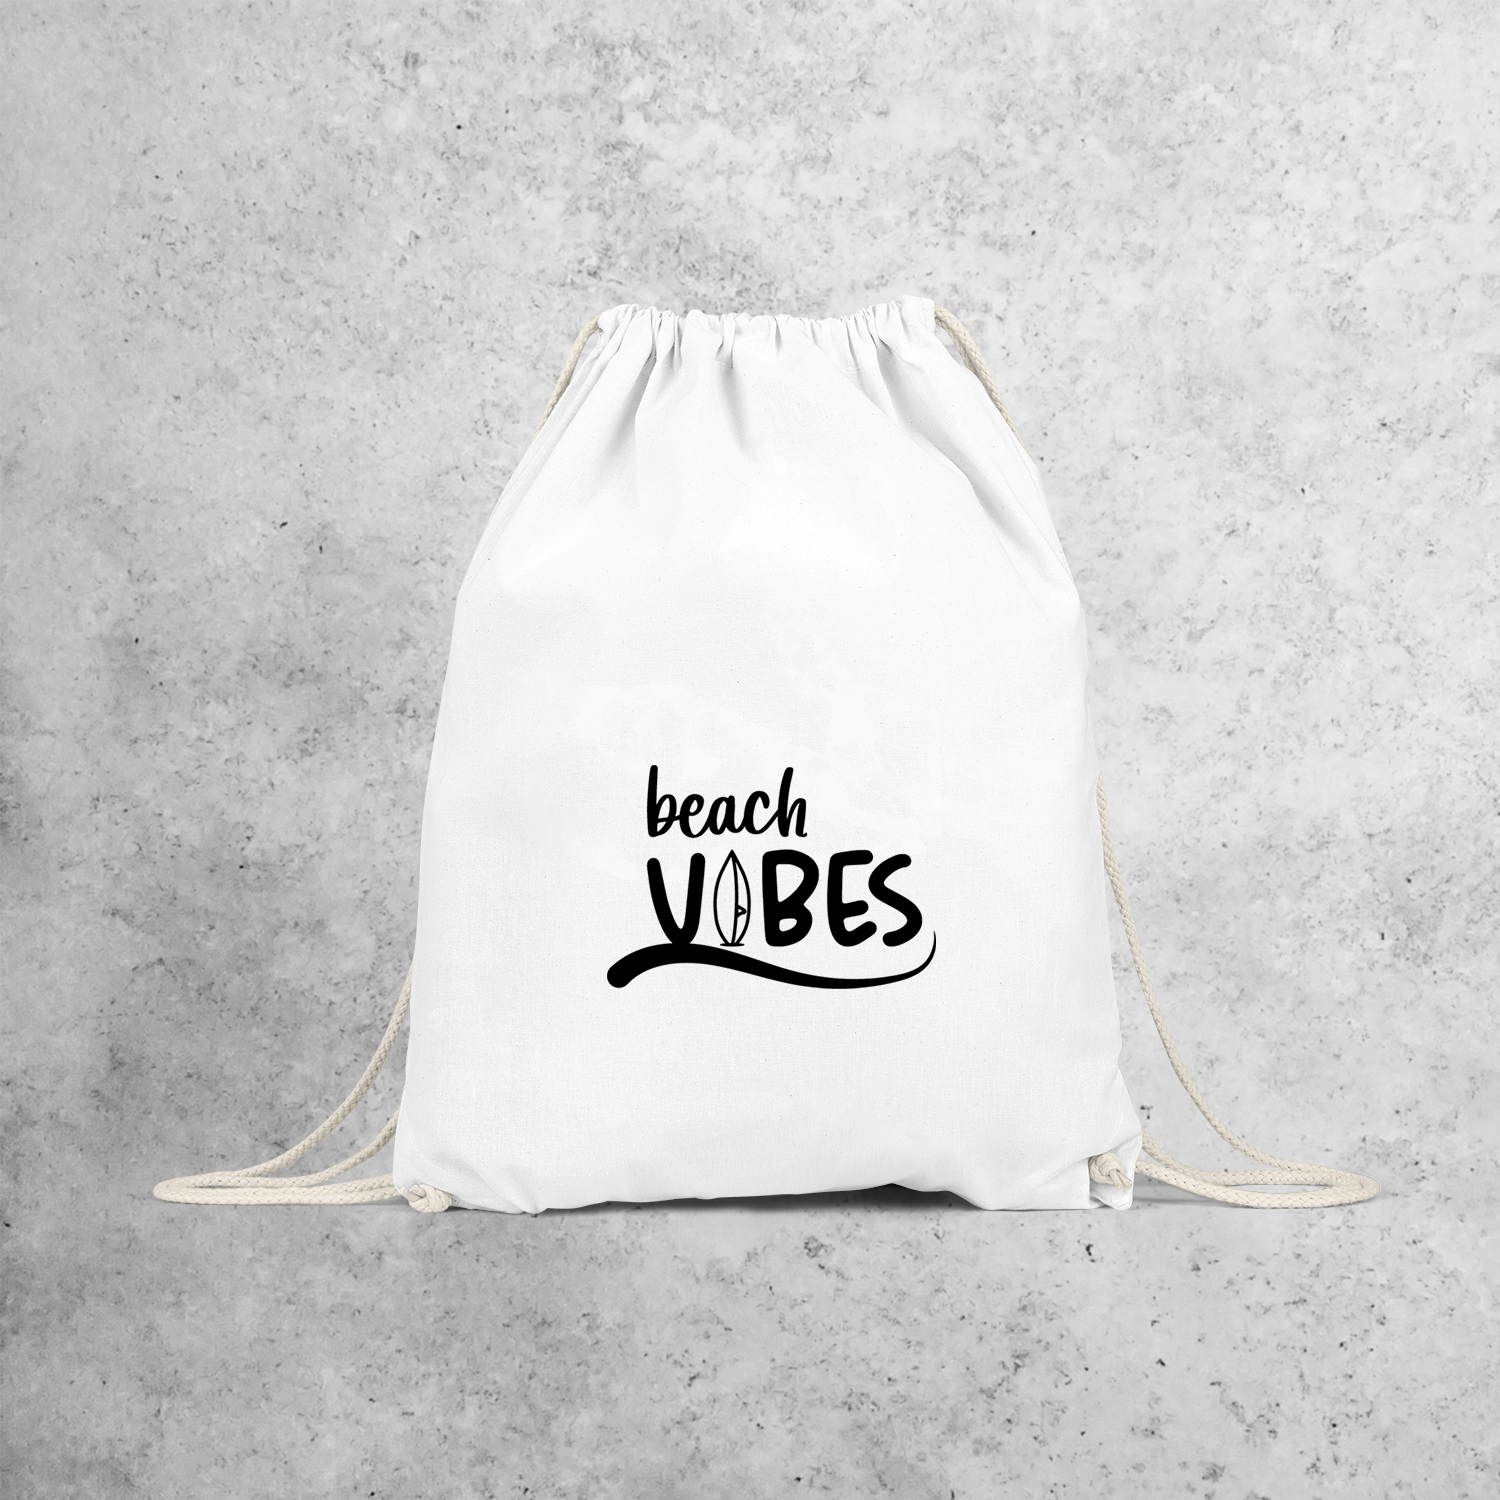 'Beach vibes' backpack